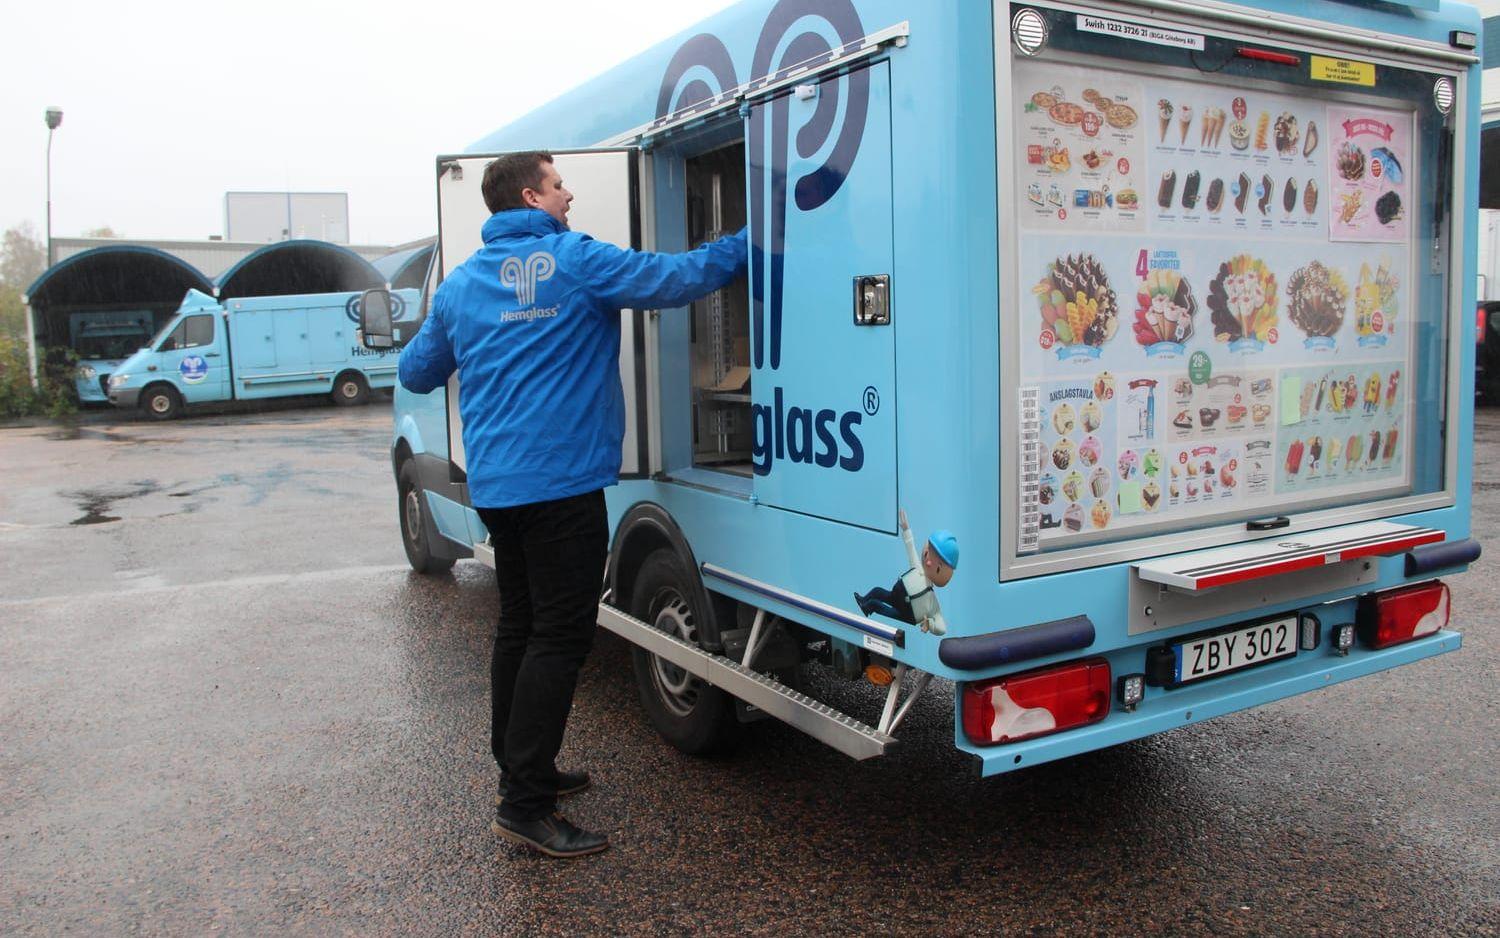 "Vi vill komma bort från uppfattningen om att glassbilen kommer på fasta tider och försöker öka flexibiliteten" säger Rickard Hällström, platschef på Hemglass i Mölnlycke. Bild: Lisa Henricson